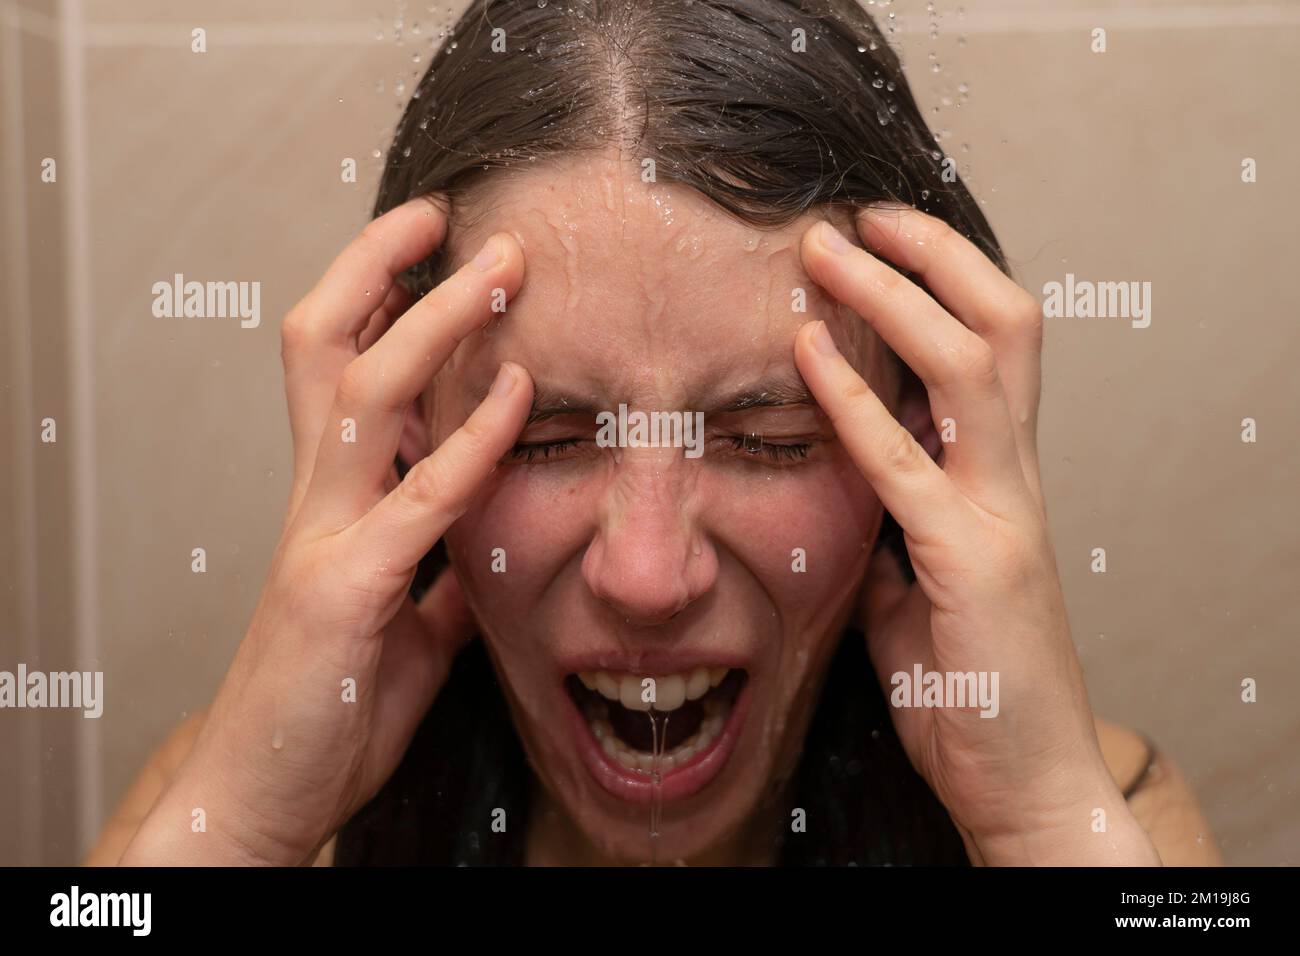 Mujer joven en la ducha con el agua que corre por su cara emocional. Concepto: Enojado, no puede soportarlo más, problemas de salud mental, estrés de la vida moderna Foto de stock